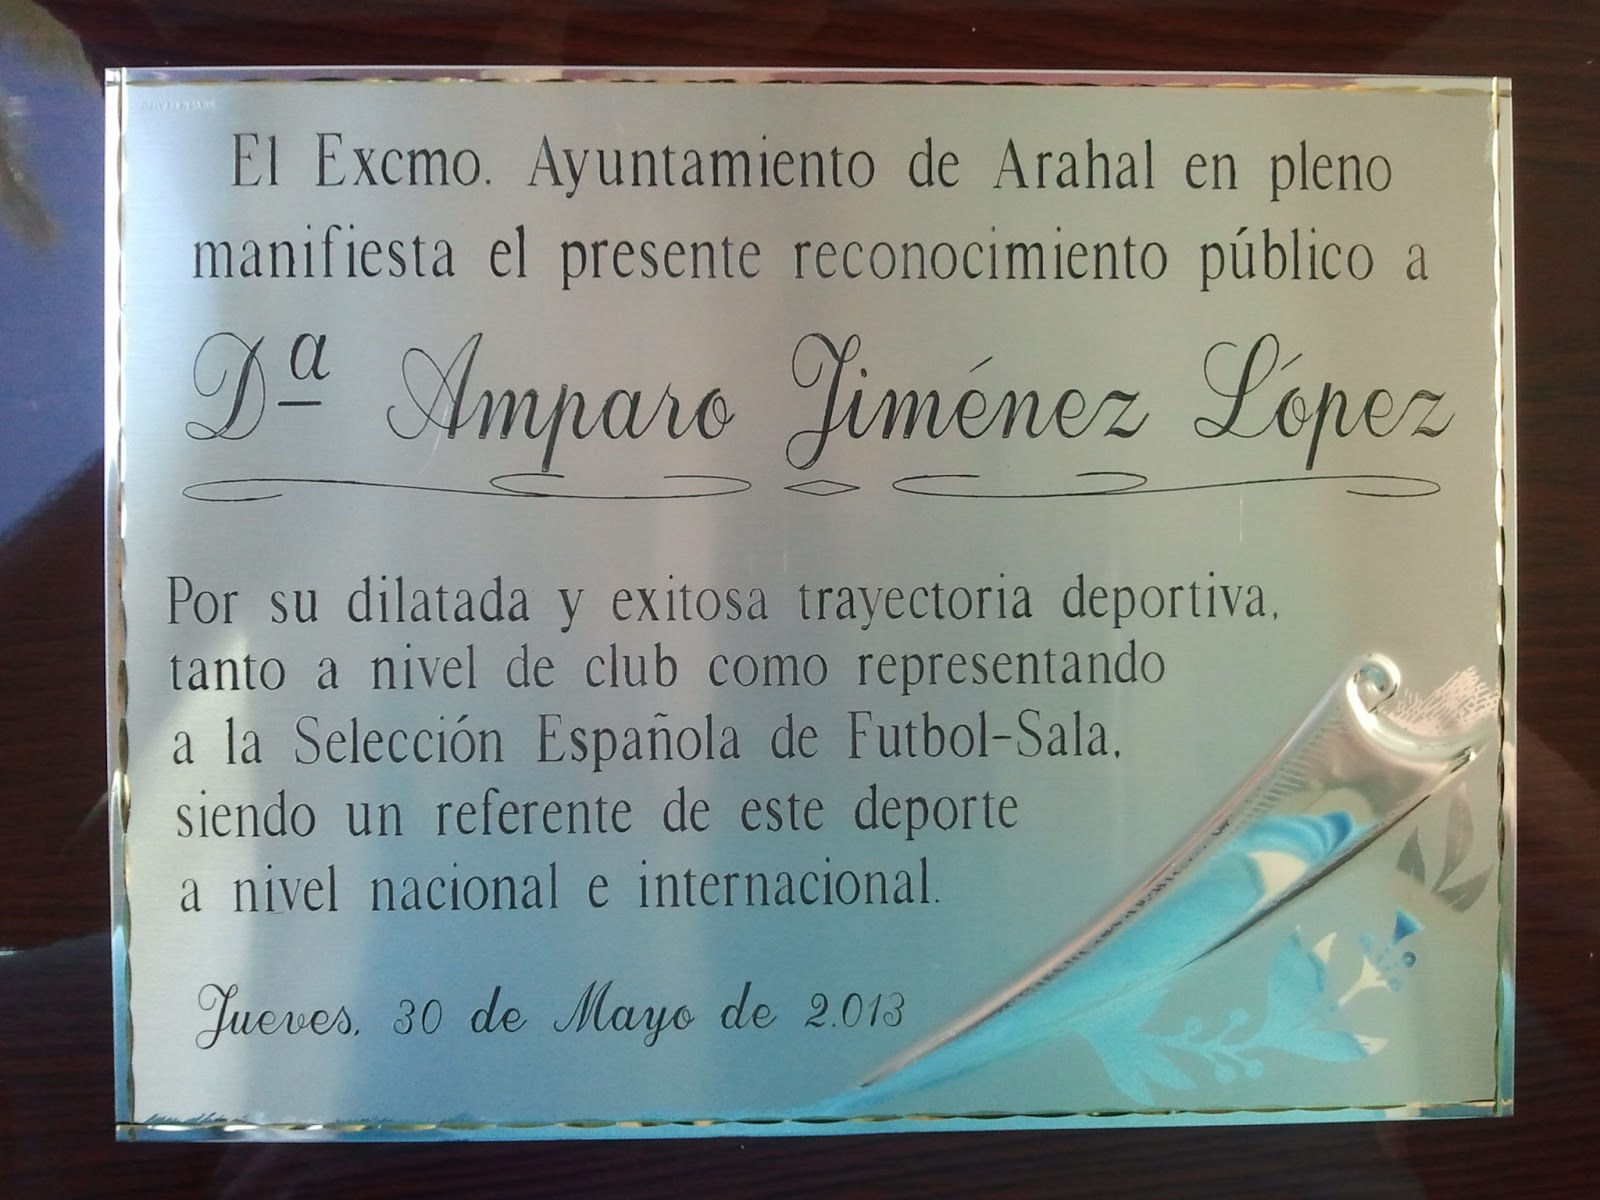 Arahal rinde homenaje a Amparo Jiménez López en el pleno del Excmo. Ayuntamiento 2013-05-30+14.32.42